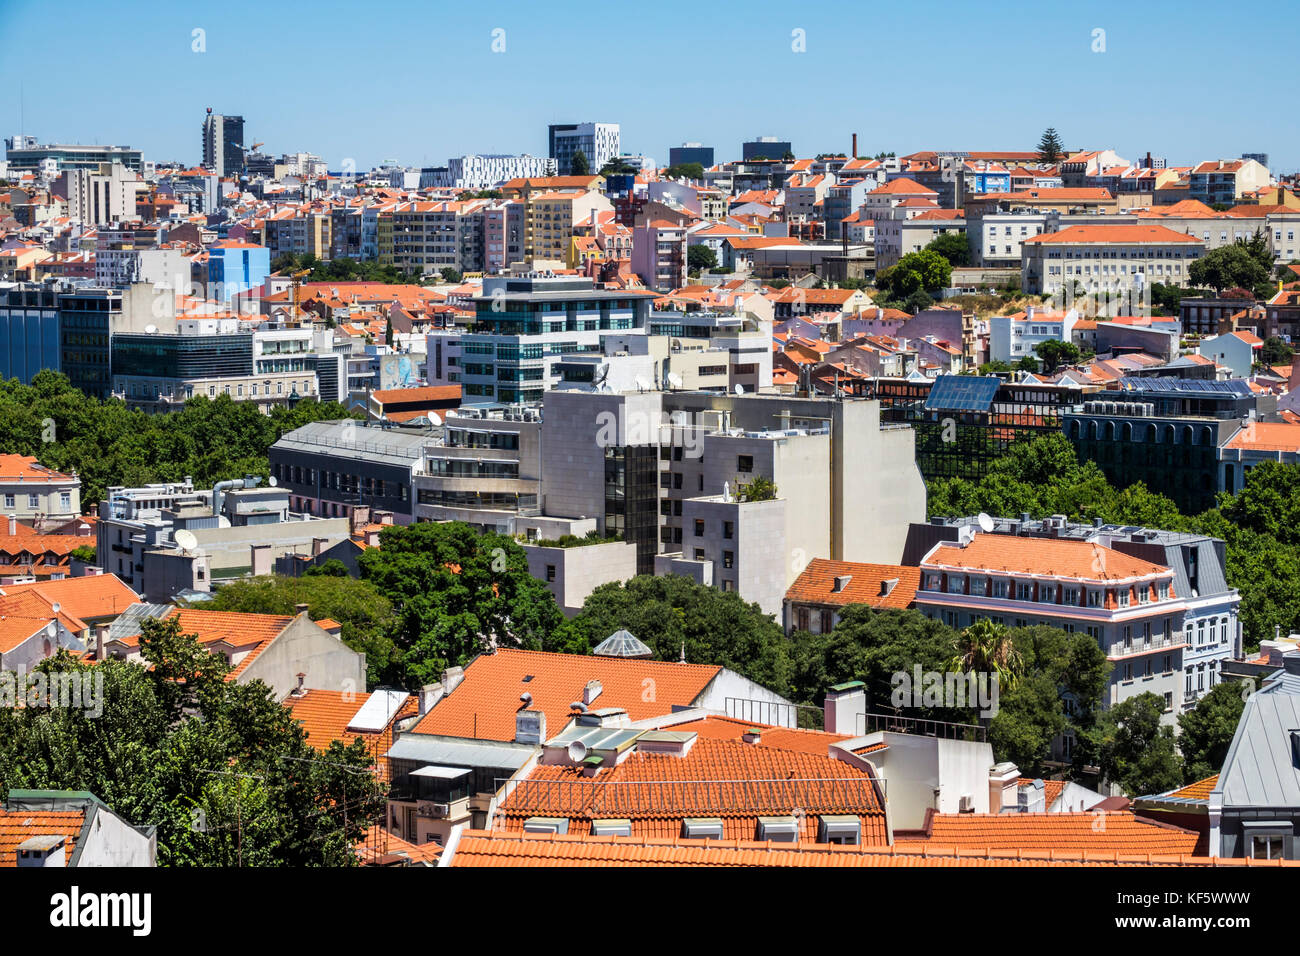 Lissabon Portugal, Bairro Alto, historisches Viertel, Principe Real, Aussichtspunkt, Aussichtspunkt, Skyline der Stadt, Dächer, Gebäude, Baixa Pombalina, Hispanic, Immigra Stockfoto